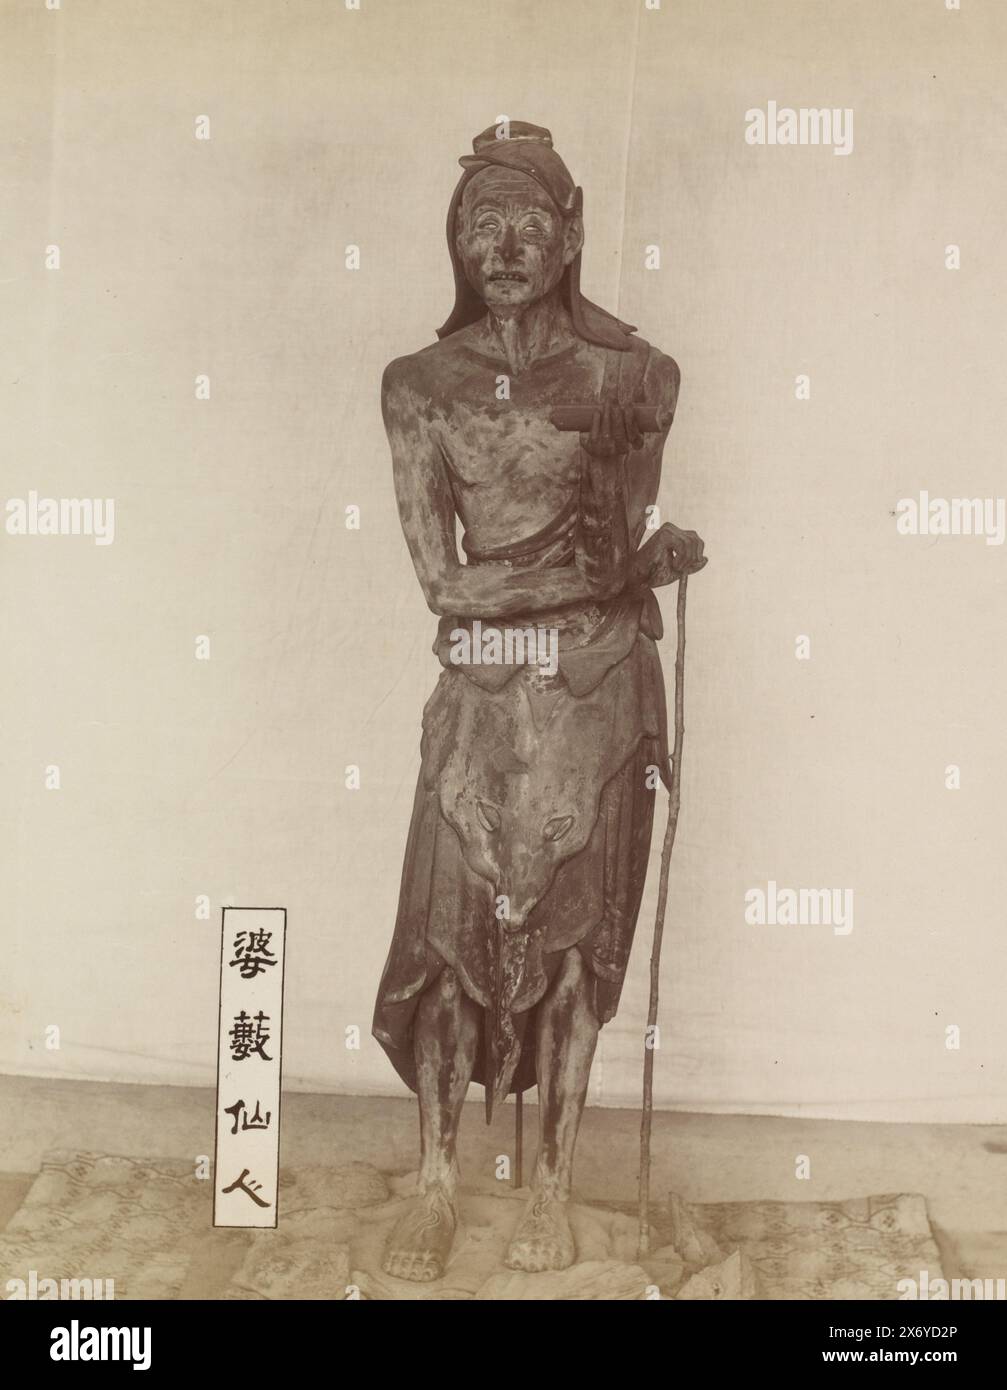 Sculpture des Basuses immortels au temple Sanjusangendo à Kyoto : une figure debout d'un homme mince avec de longs cheveux, tenant un bâton et un rouleau dans sa main gauche, avec un panneau sur le sol à côté de lui qui lit 婆藪仙人, 'Basu sennin' ('le Basu immortel'). Basu (sanskr. Vasu) est représenté comme un ascète indien ; il apparaît dans les temples bouddhistes japonais comme l'un des assistants de Senju Kannon, le Bodhisattva à mille bras Avalokiteshvara., partie de l'album avec 69 photos d'un voyage à travers le Japon., photographie, anonyme, Japon, 1890 - 1894, carton, impression albumine, hauteur, 270 mm × largeur, 204 mm Banque D'Images